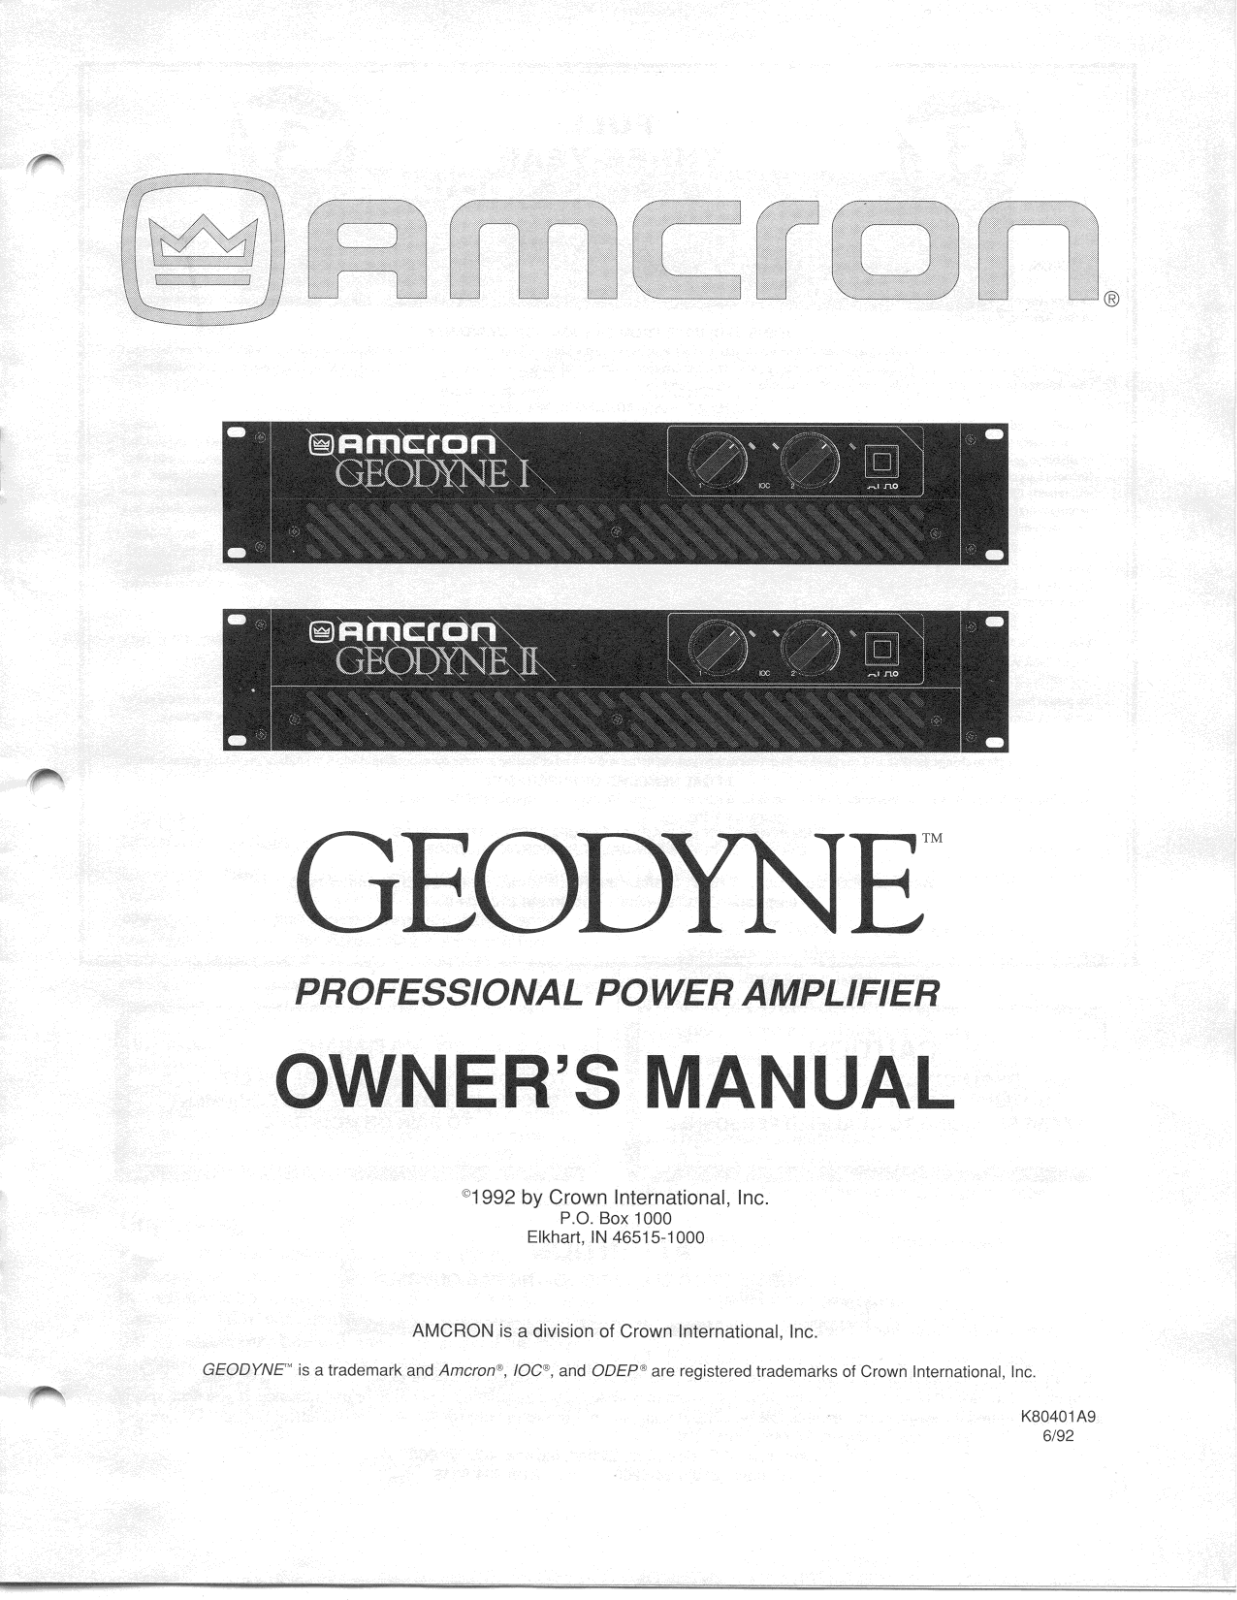 Crown Geodyne 1, Geodyne 2 Owners manual